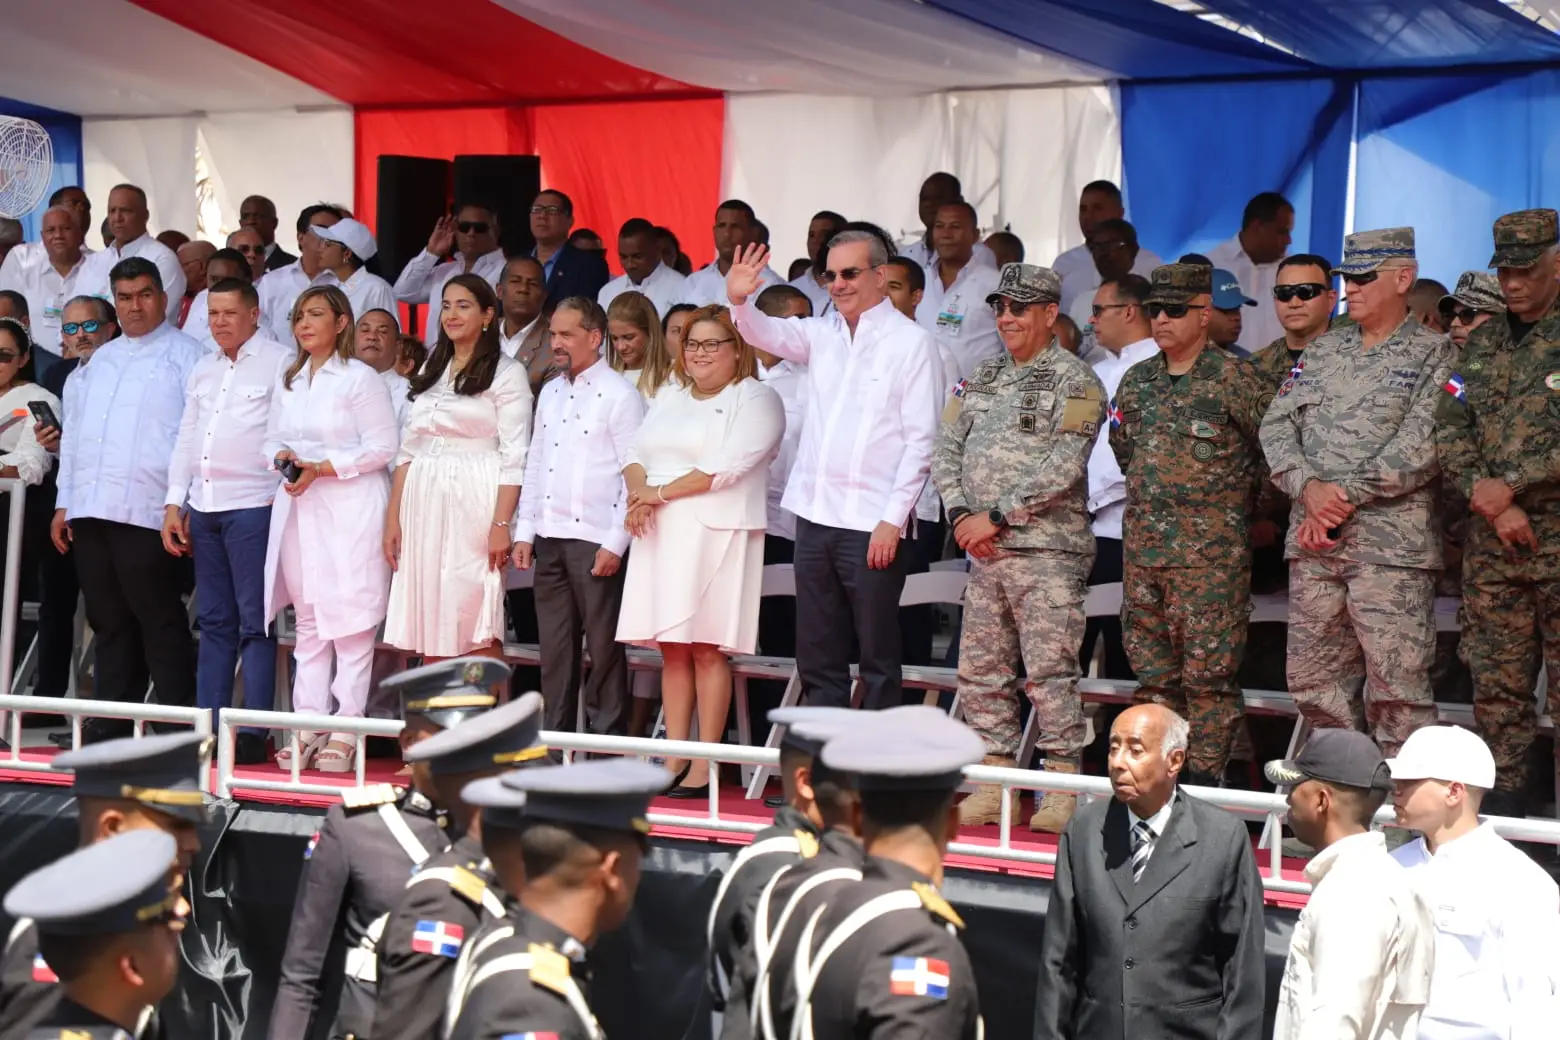 El presidente Luis Abinader encabezó este sábado los actos conmemorativos del 178 aniversario de la Batalla de Azua del 19 de marzo, la primera gran batalla en defensa